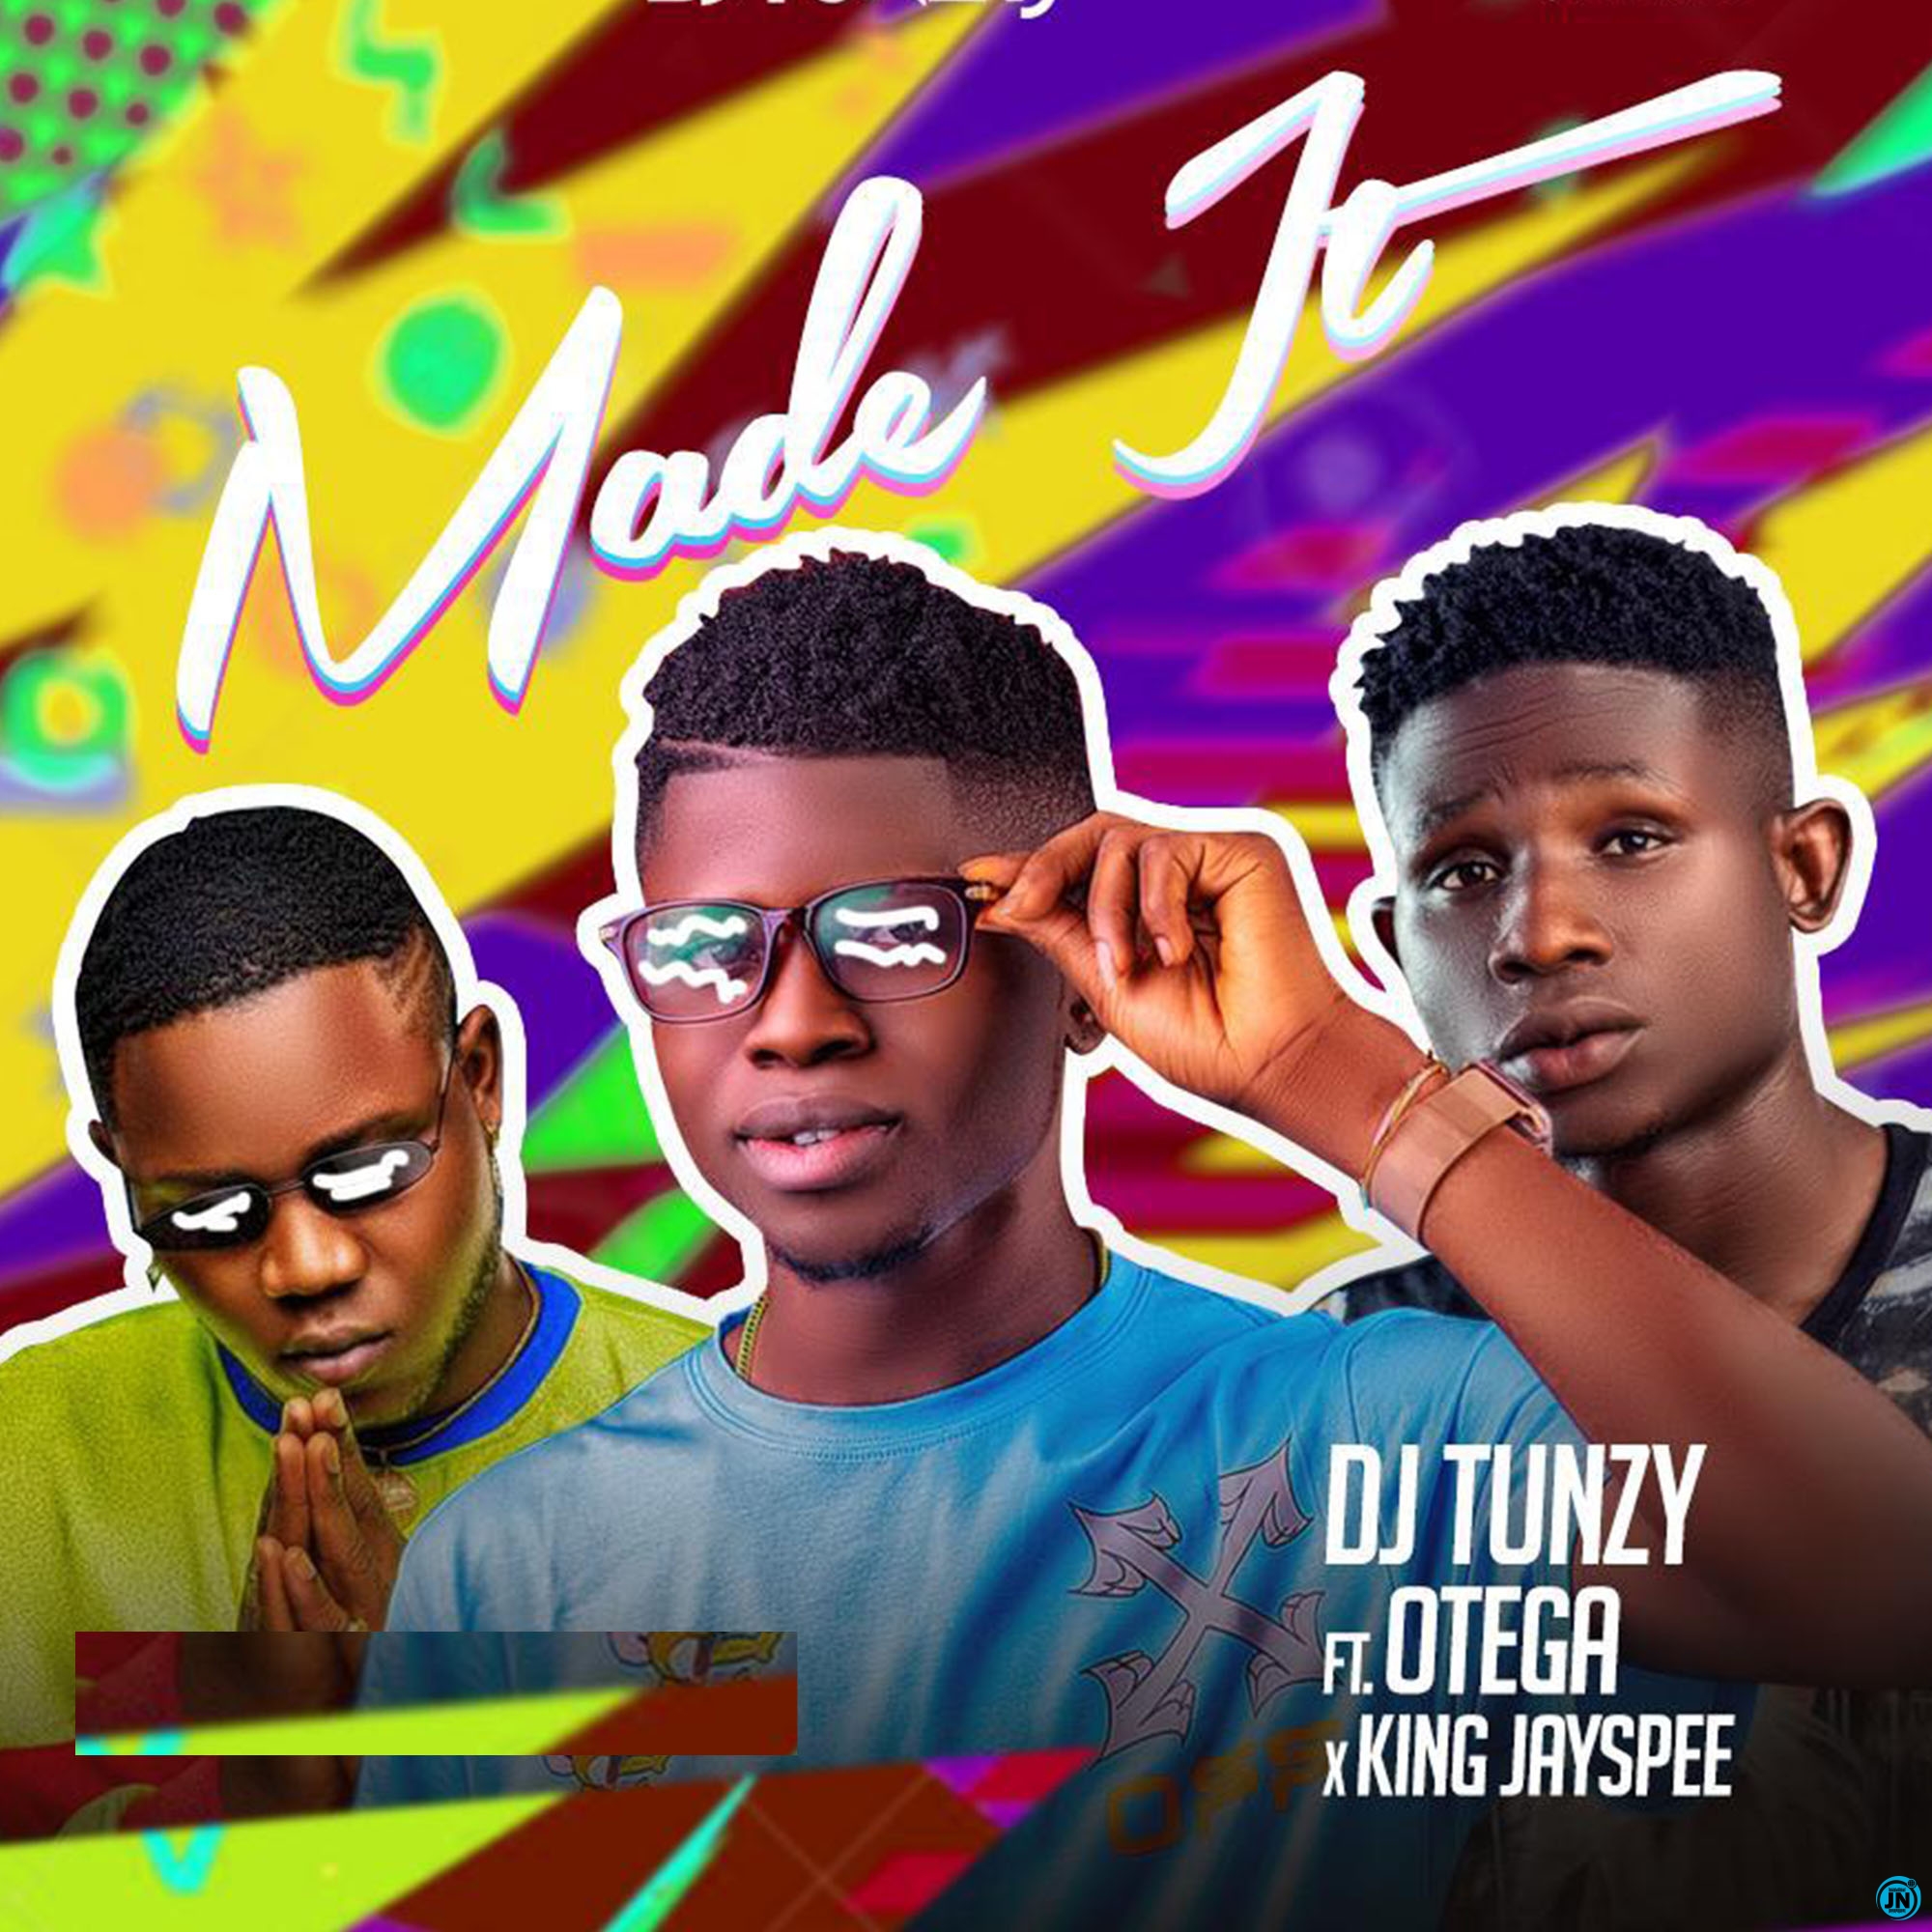 DJ Tunzy - Made It ft. Otega & King Jayspee   Mp3 Download lyrics